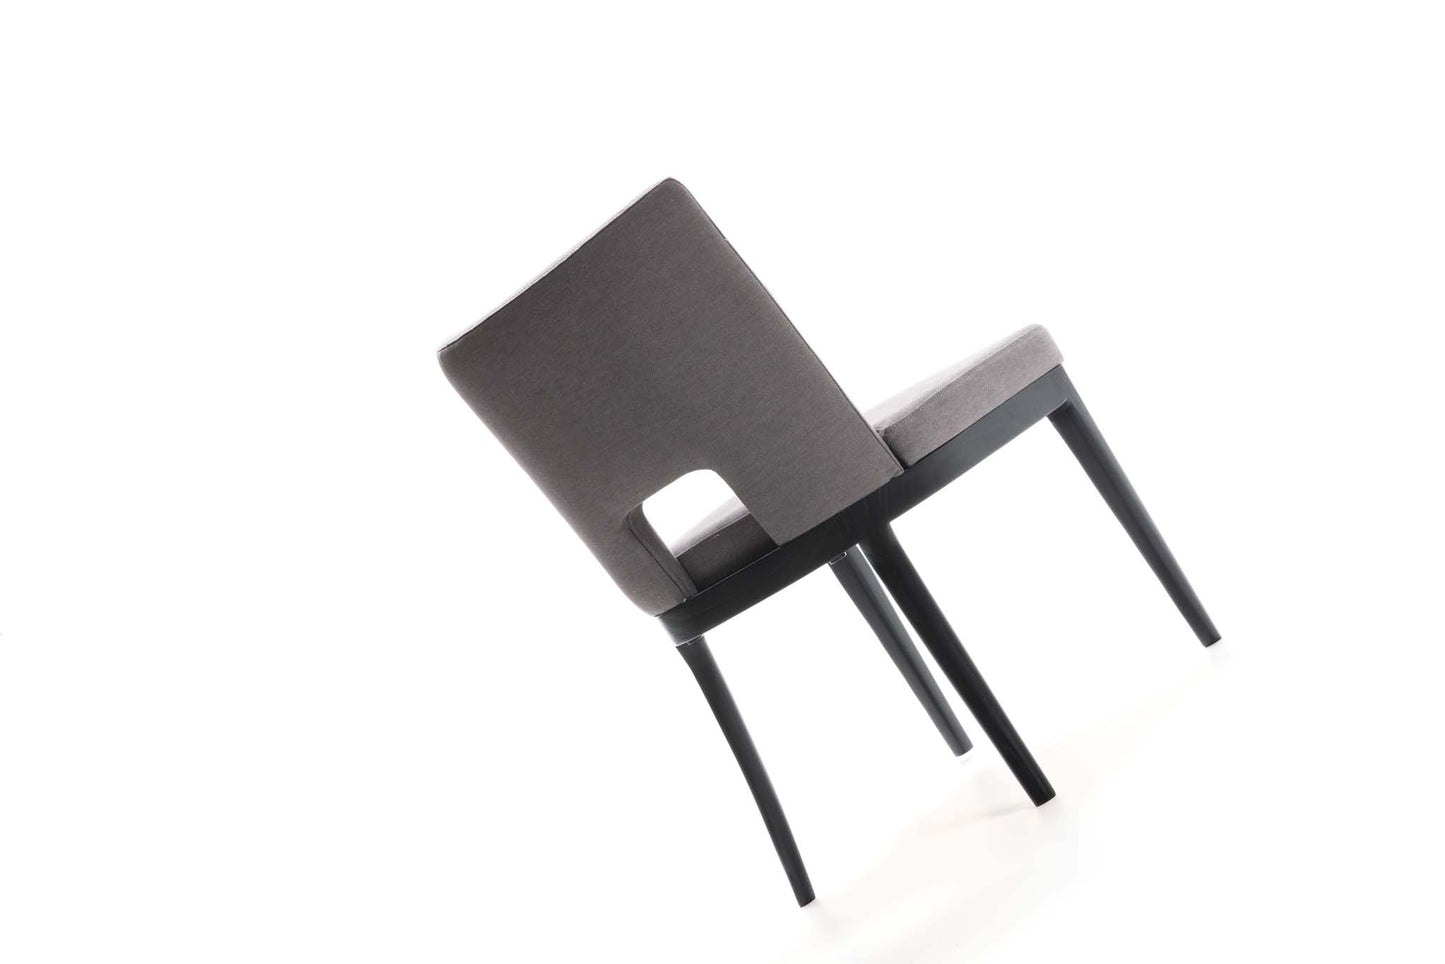 Sierra Dining Chair - Steel